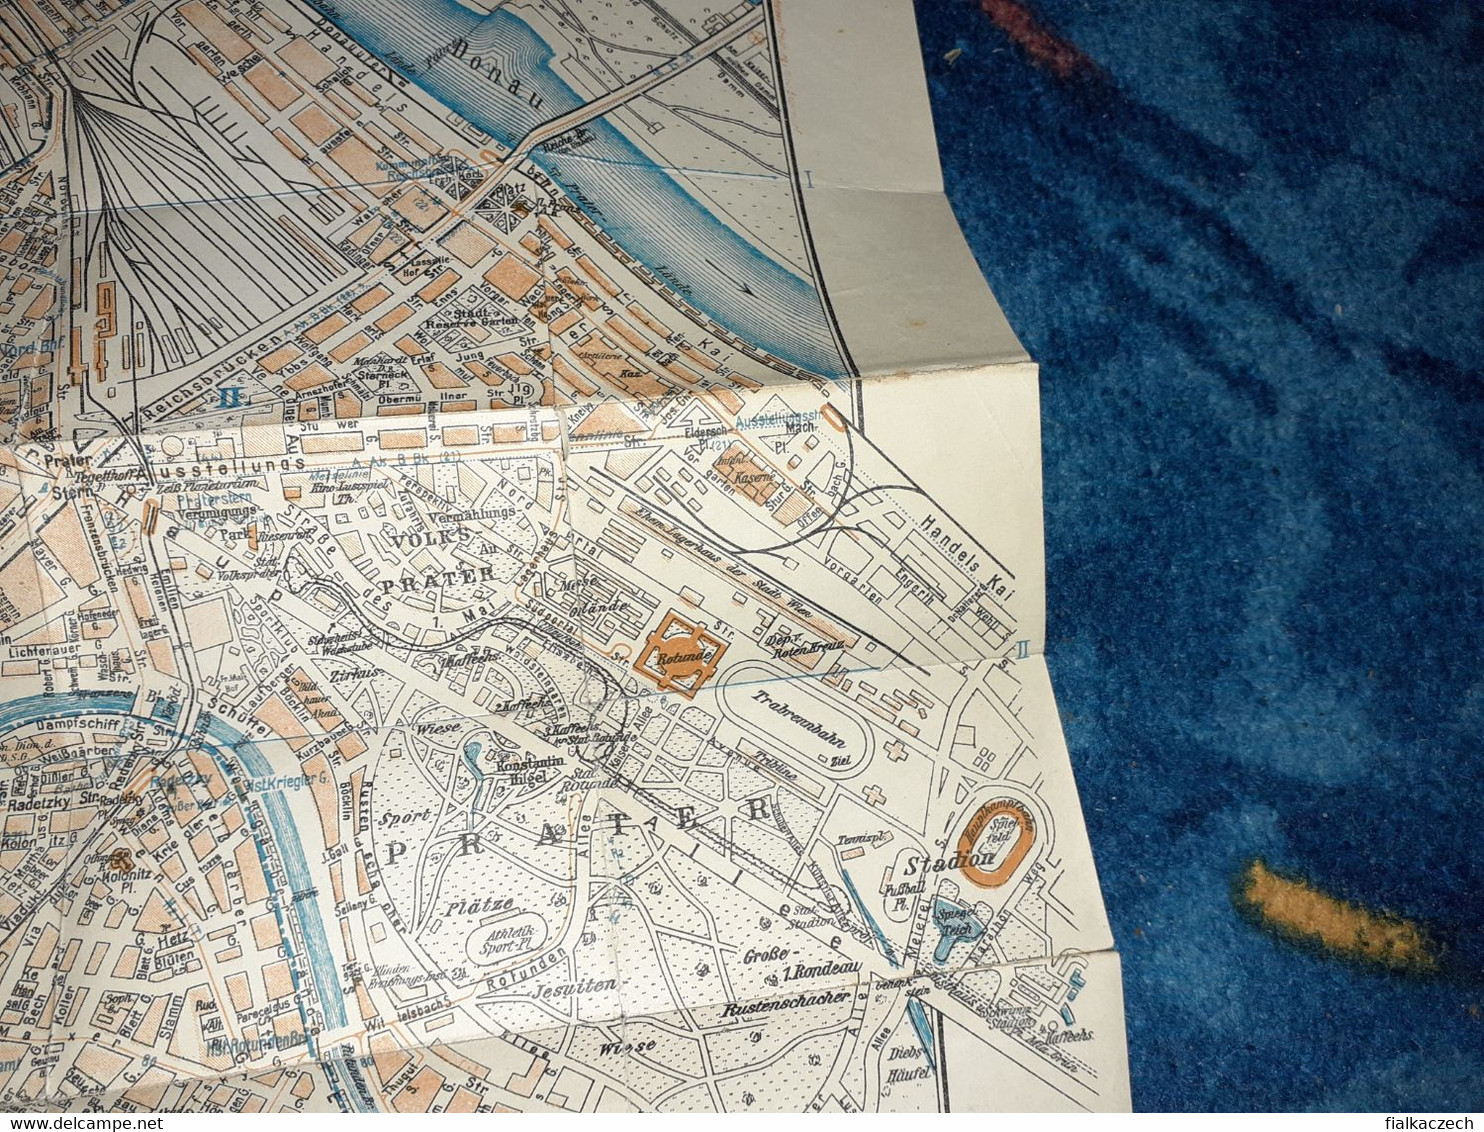 Grieben 1937, Wien und Umgebung kleine Ausgabe Reiseführer, Austria tourist guide, Tour guide with map, Karte